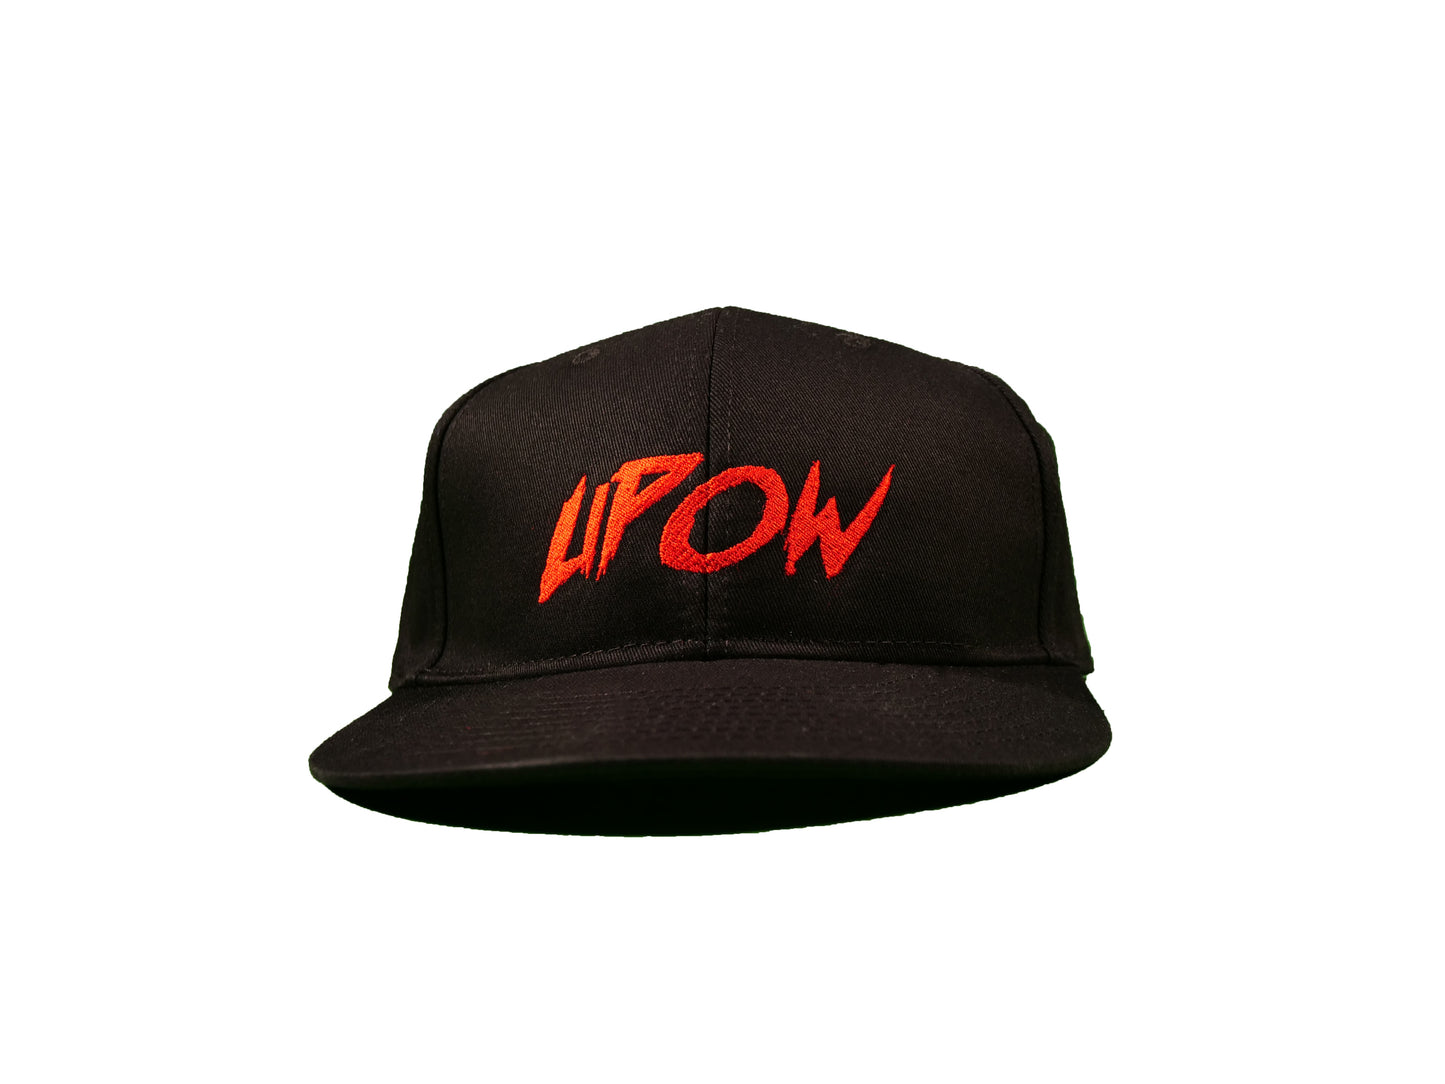 Upow Cap